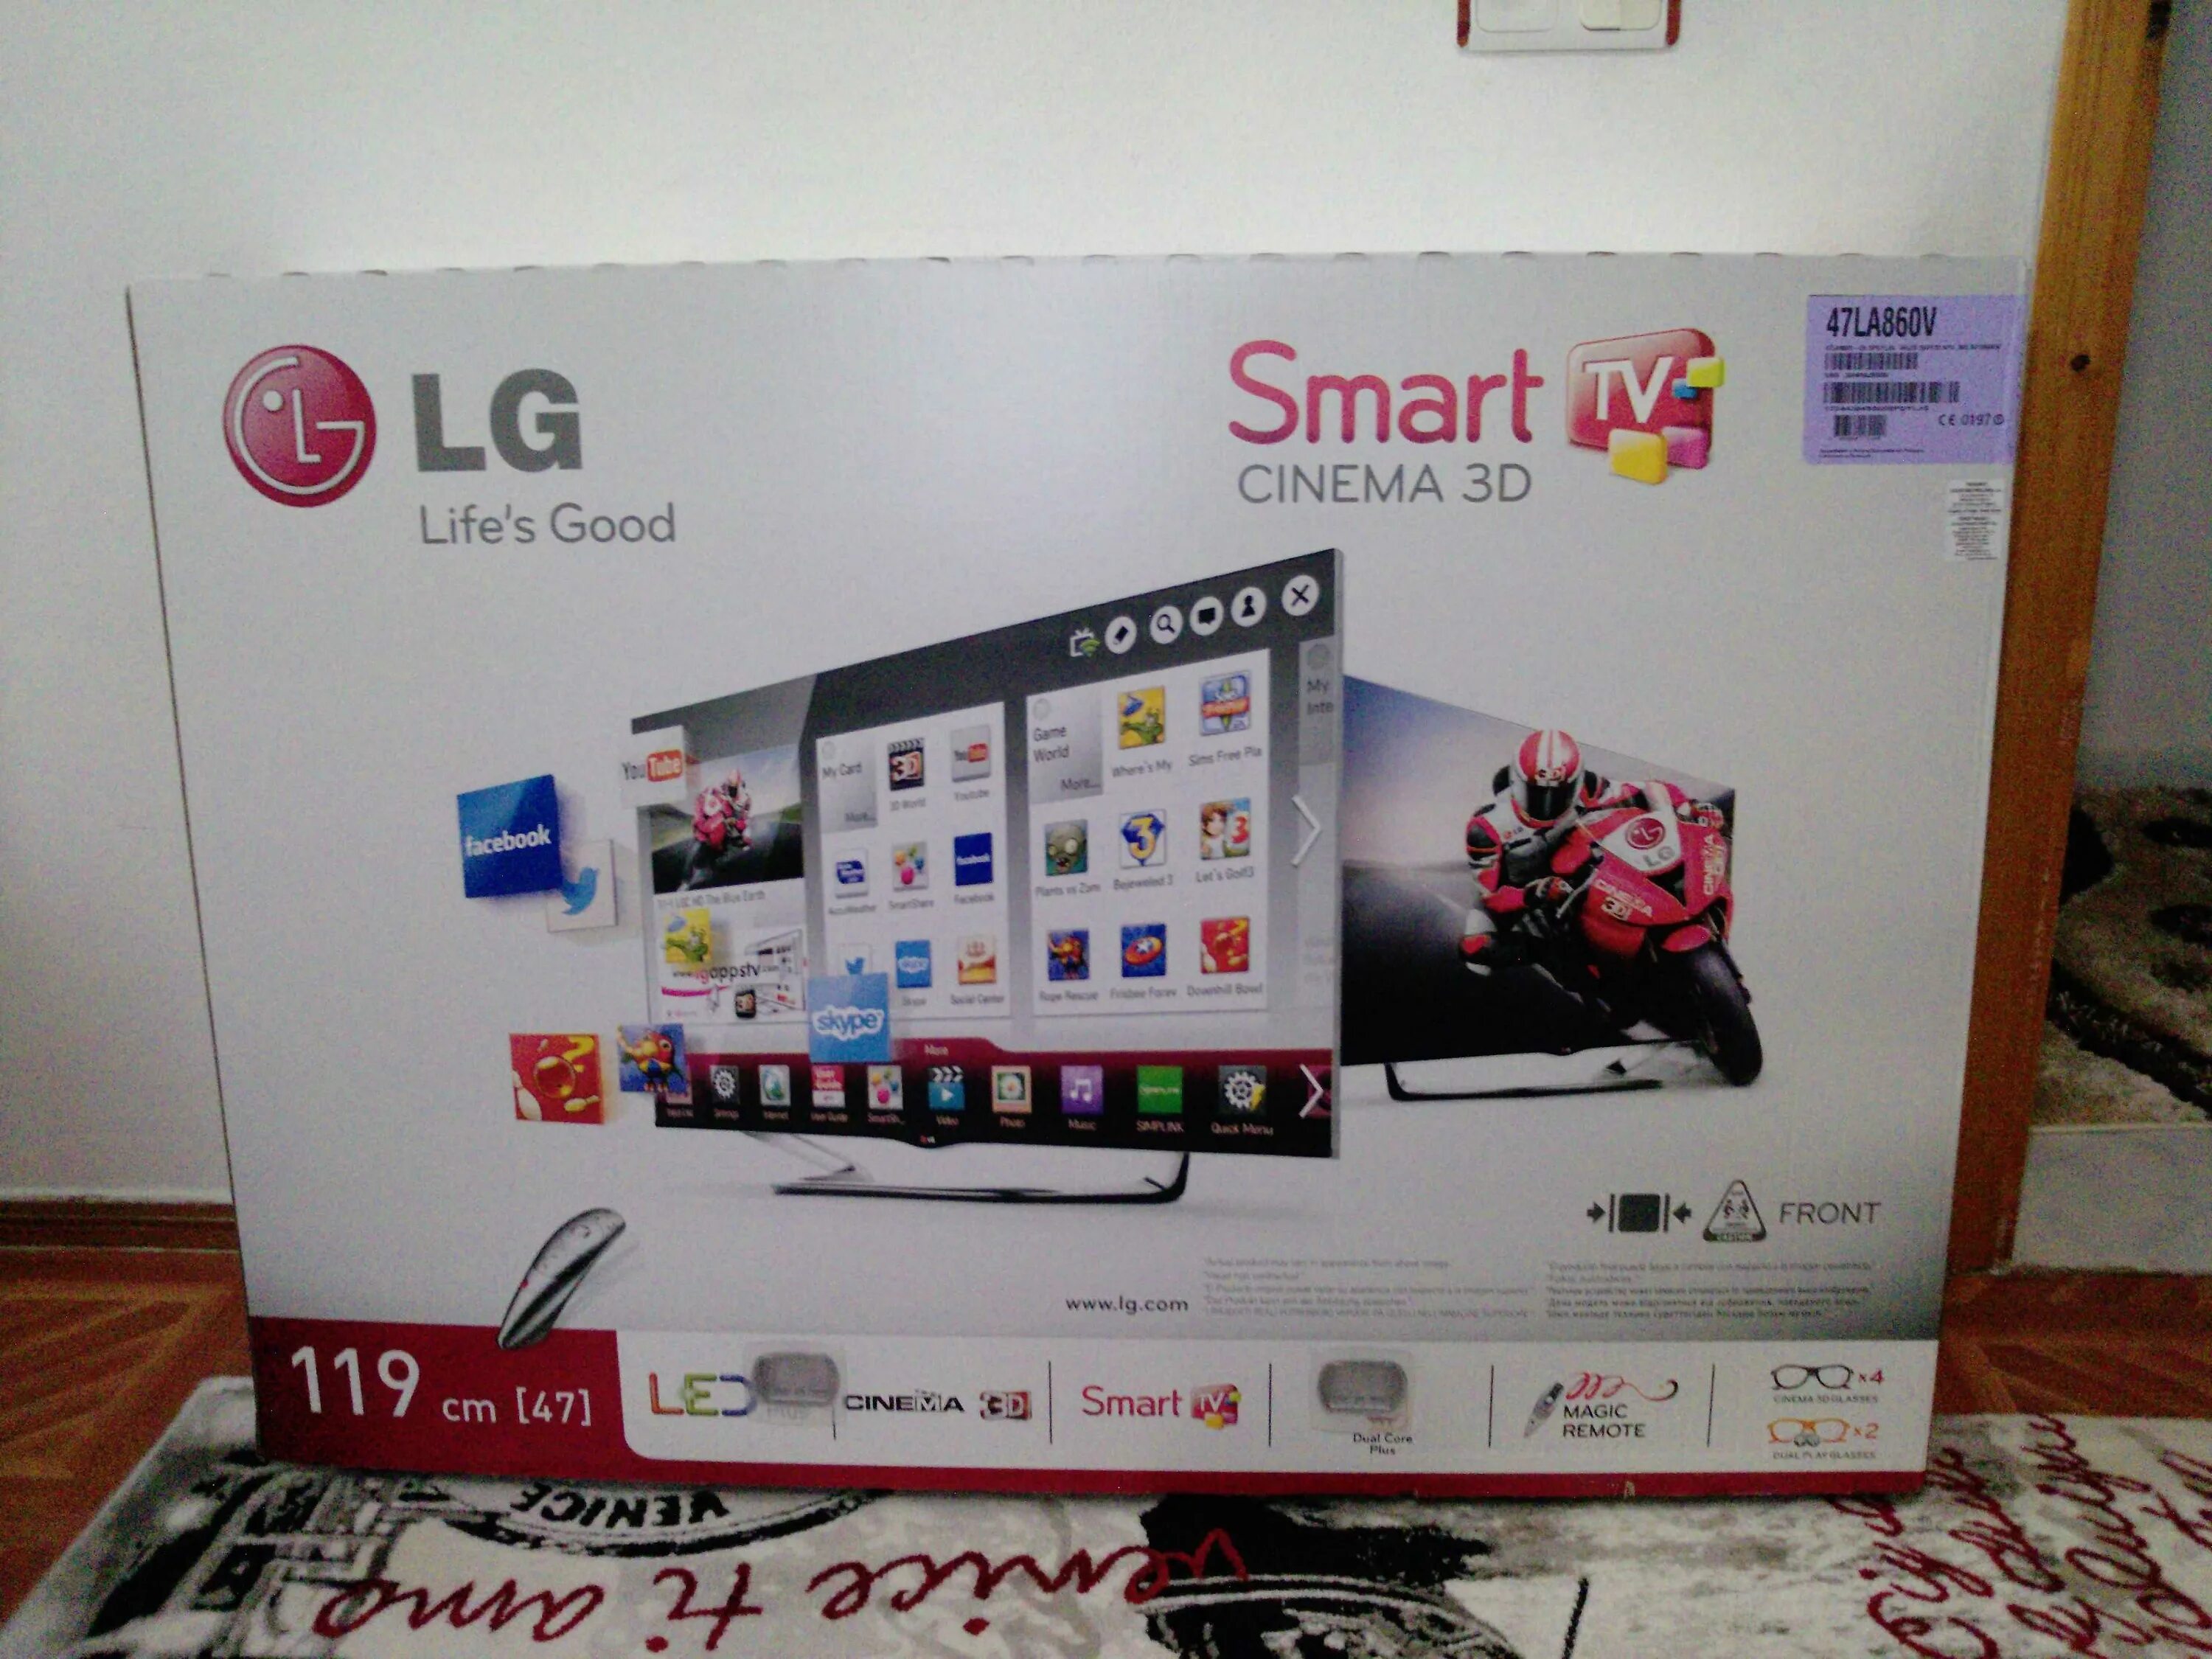 Телевизор LG 47la960v 47". LG Smart TV 2013 года. Телевизор LG 47la667v 47". Телевизор LG Smart TV 2013 года. Телевизор lg la